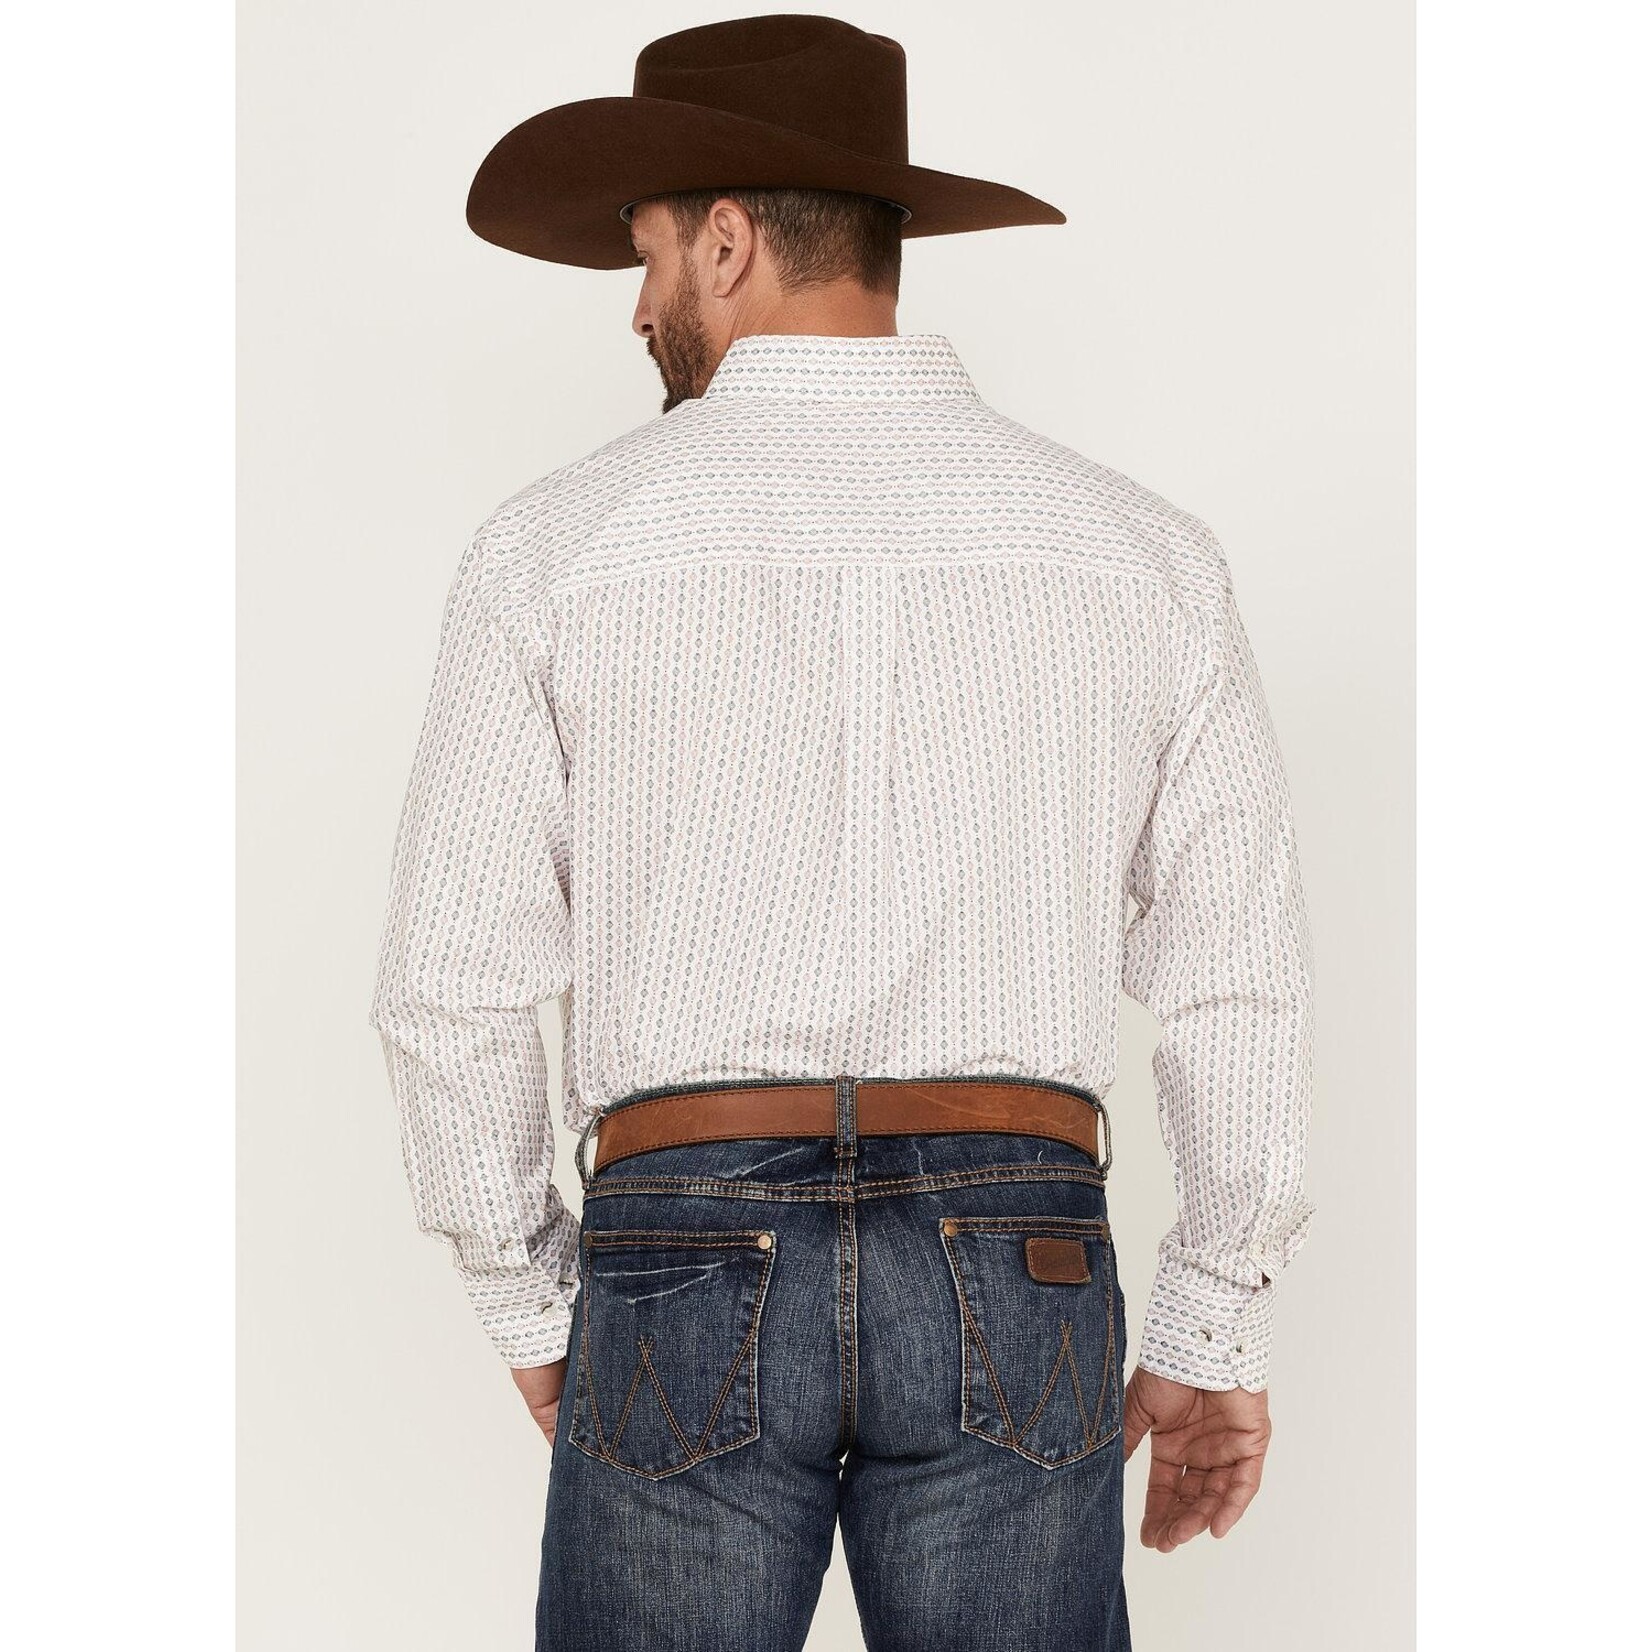 Wrangler Wrangler - Men's George Strait Collection Long Sleeve Shirt - 112314987